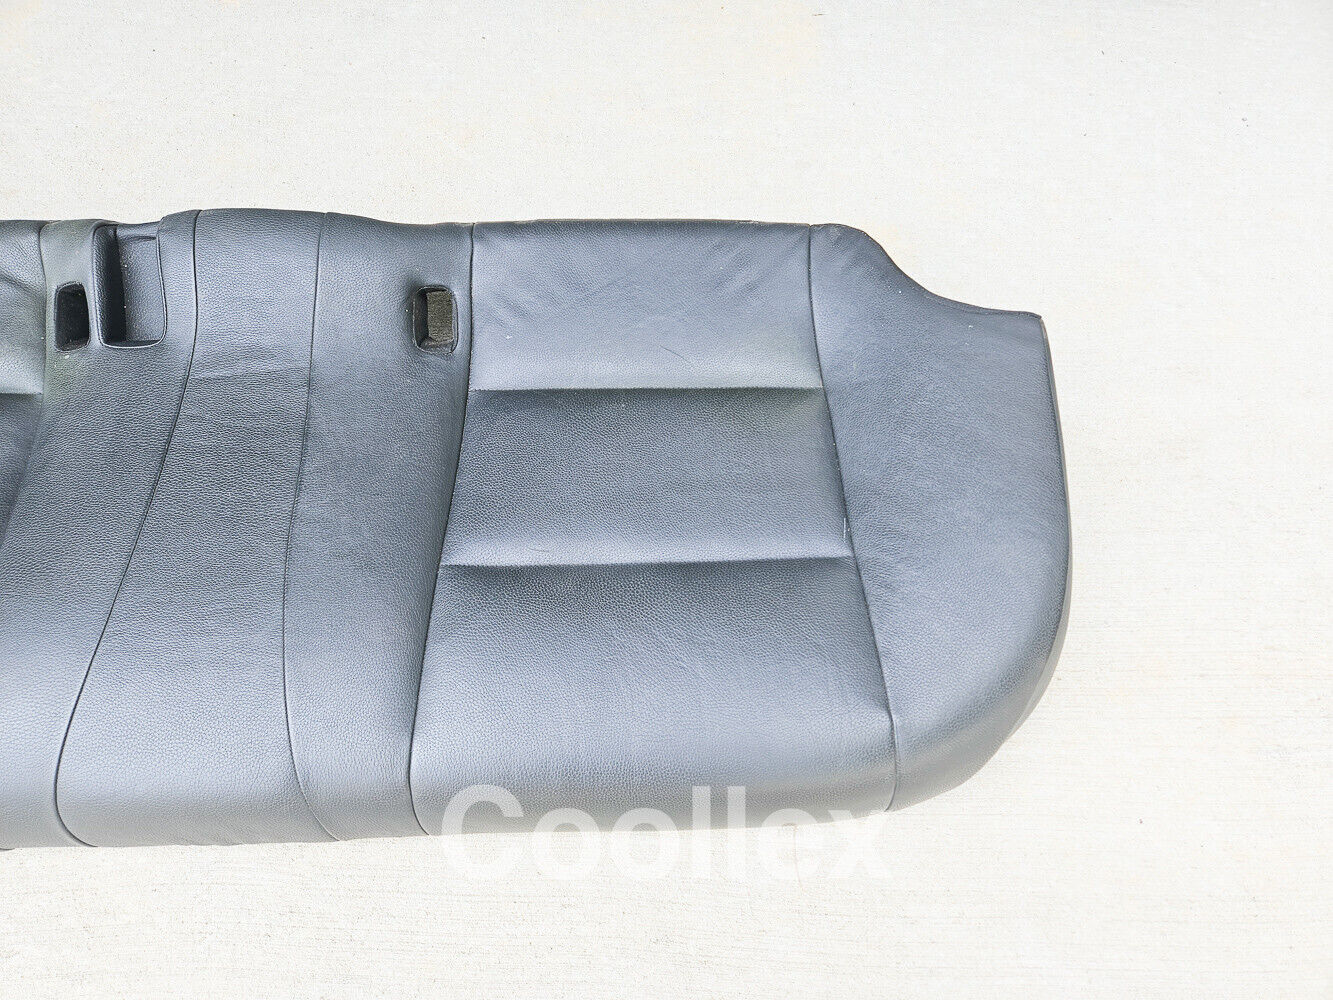 11-16 Bmw 550i F10 Rear Seat Cushion 52-20-7-254-141 Oem